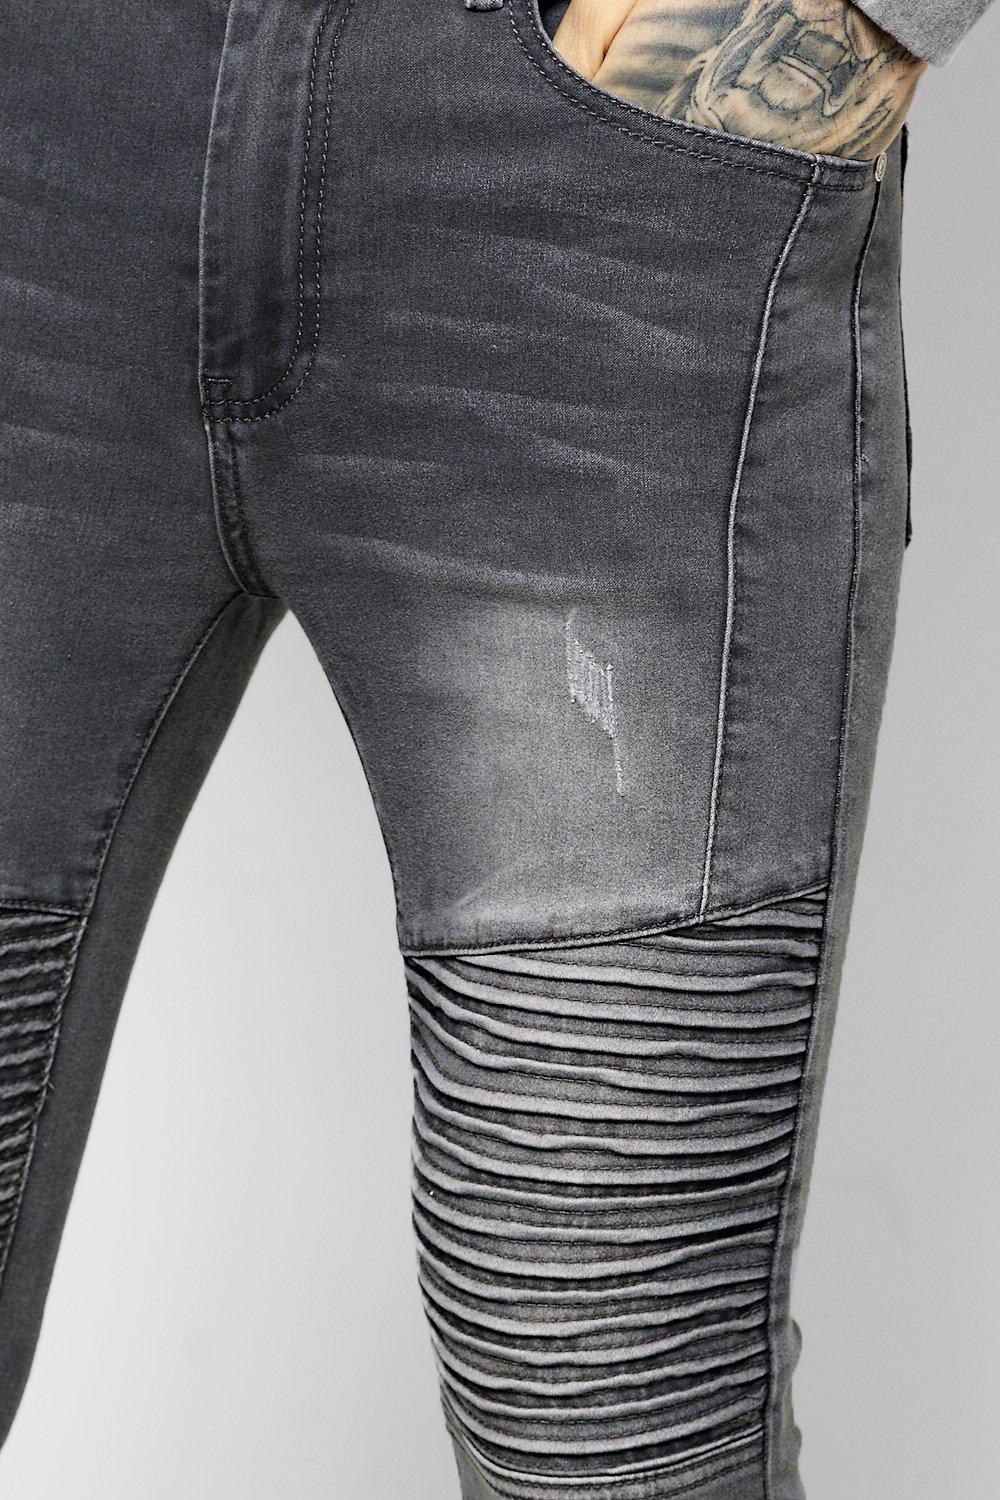 excentrisk frugtbart forklædning Men's Skinny Ribbed Biker Jeans With Abrasions | boohoo